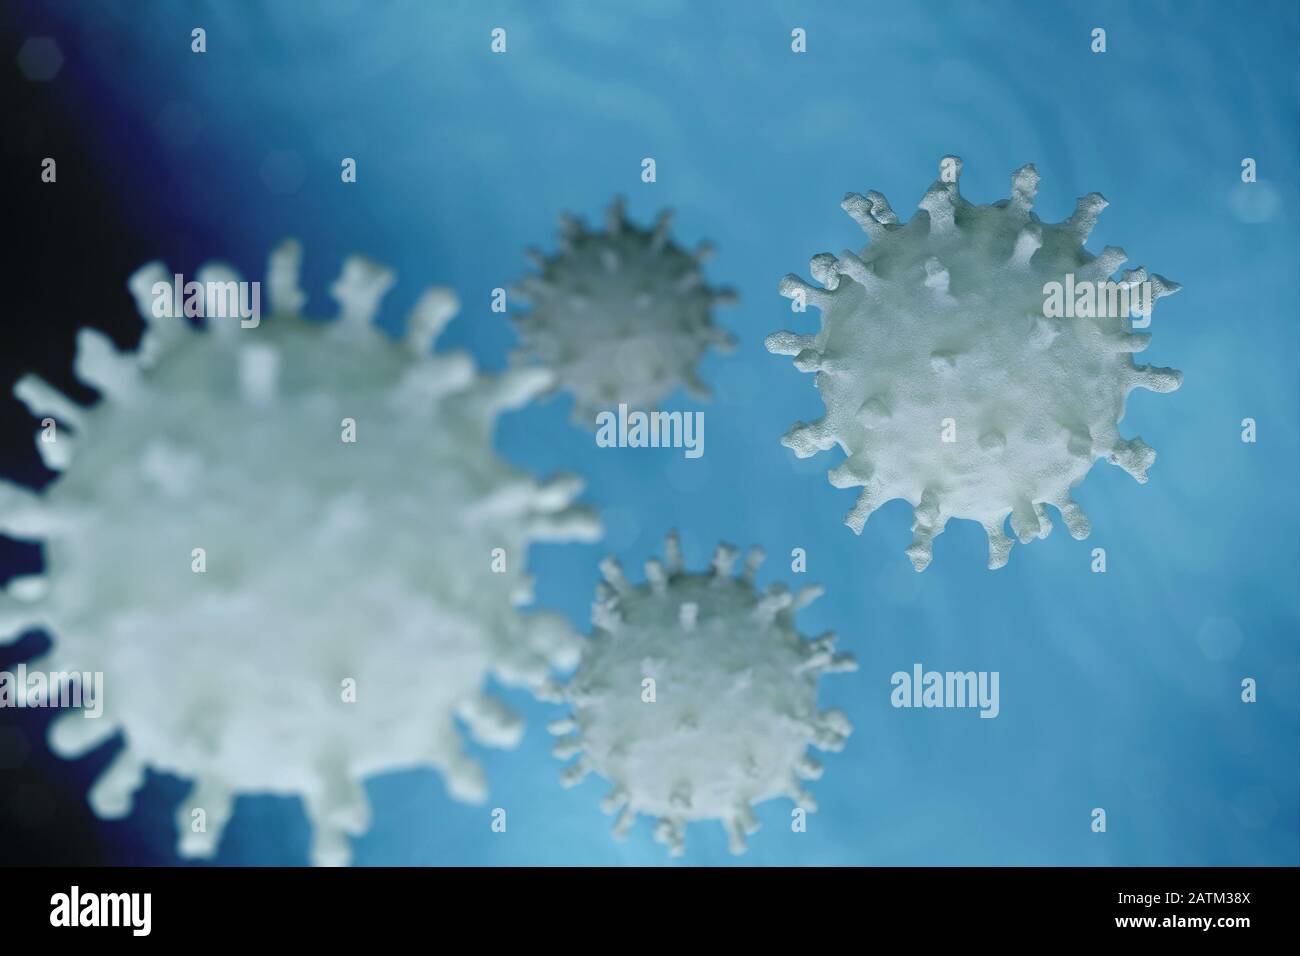 Illustrazione scientifica del virus Corona, 3D rendere basato su immagini microscopiche del virus dal focolaio del 2020 Cina Foto Stock